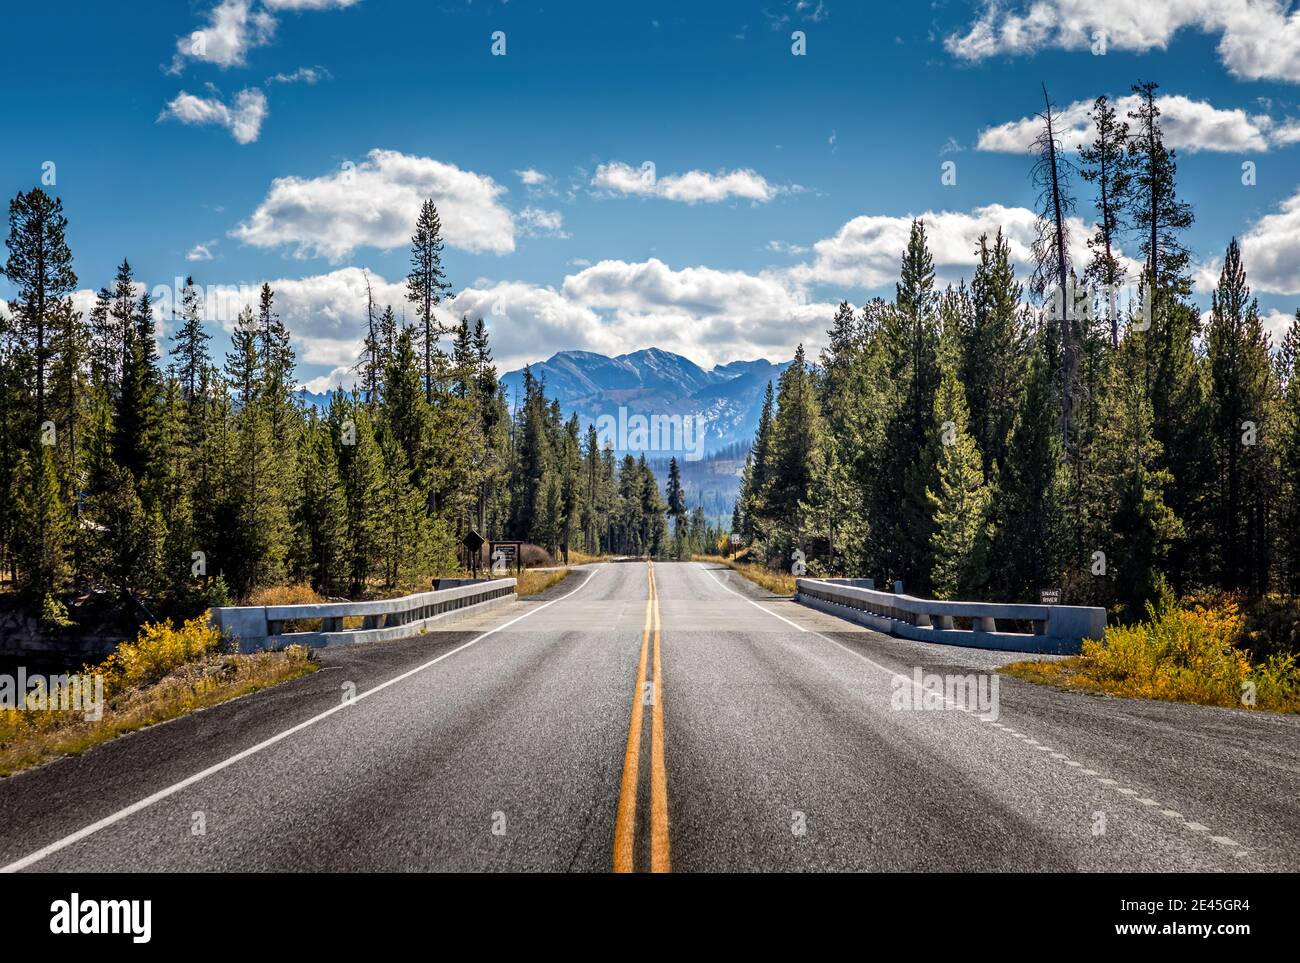 Carretera desde el Parque Nacional Yellowstone al Parque Nacional Grand Teton, Wyoming, Estados Unidos Foto de stock